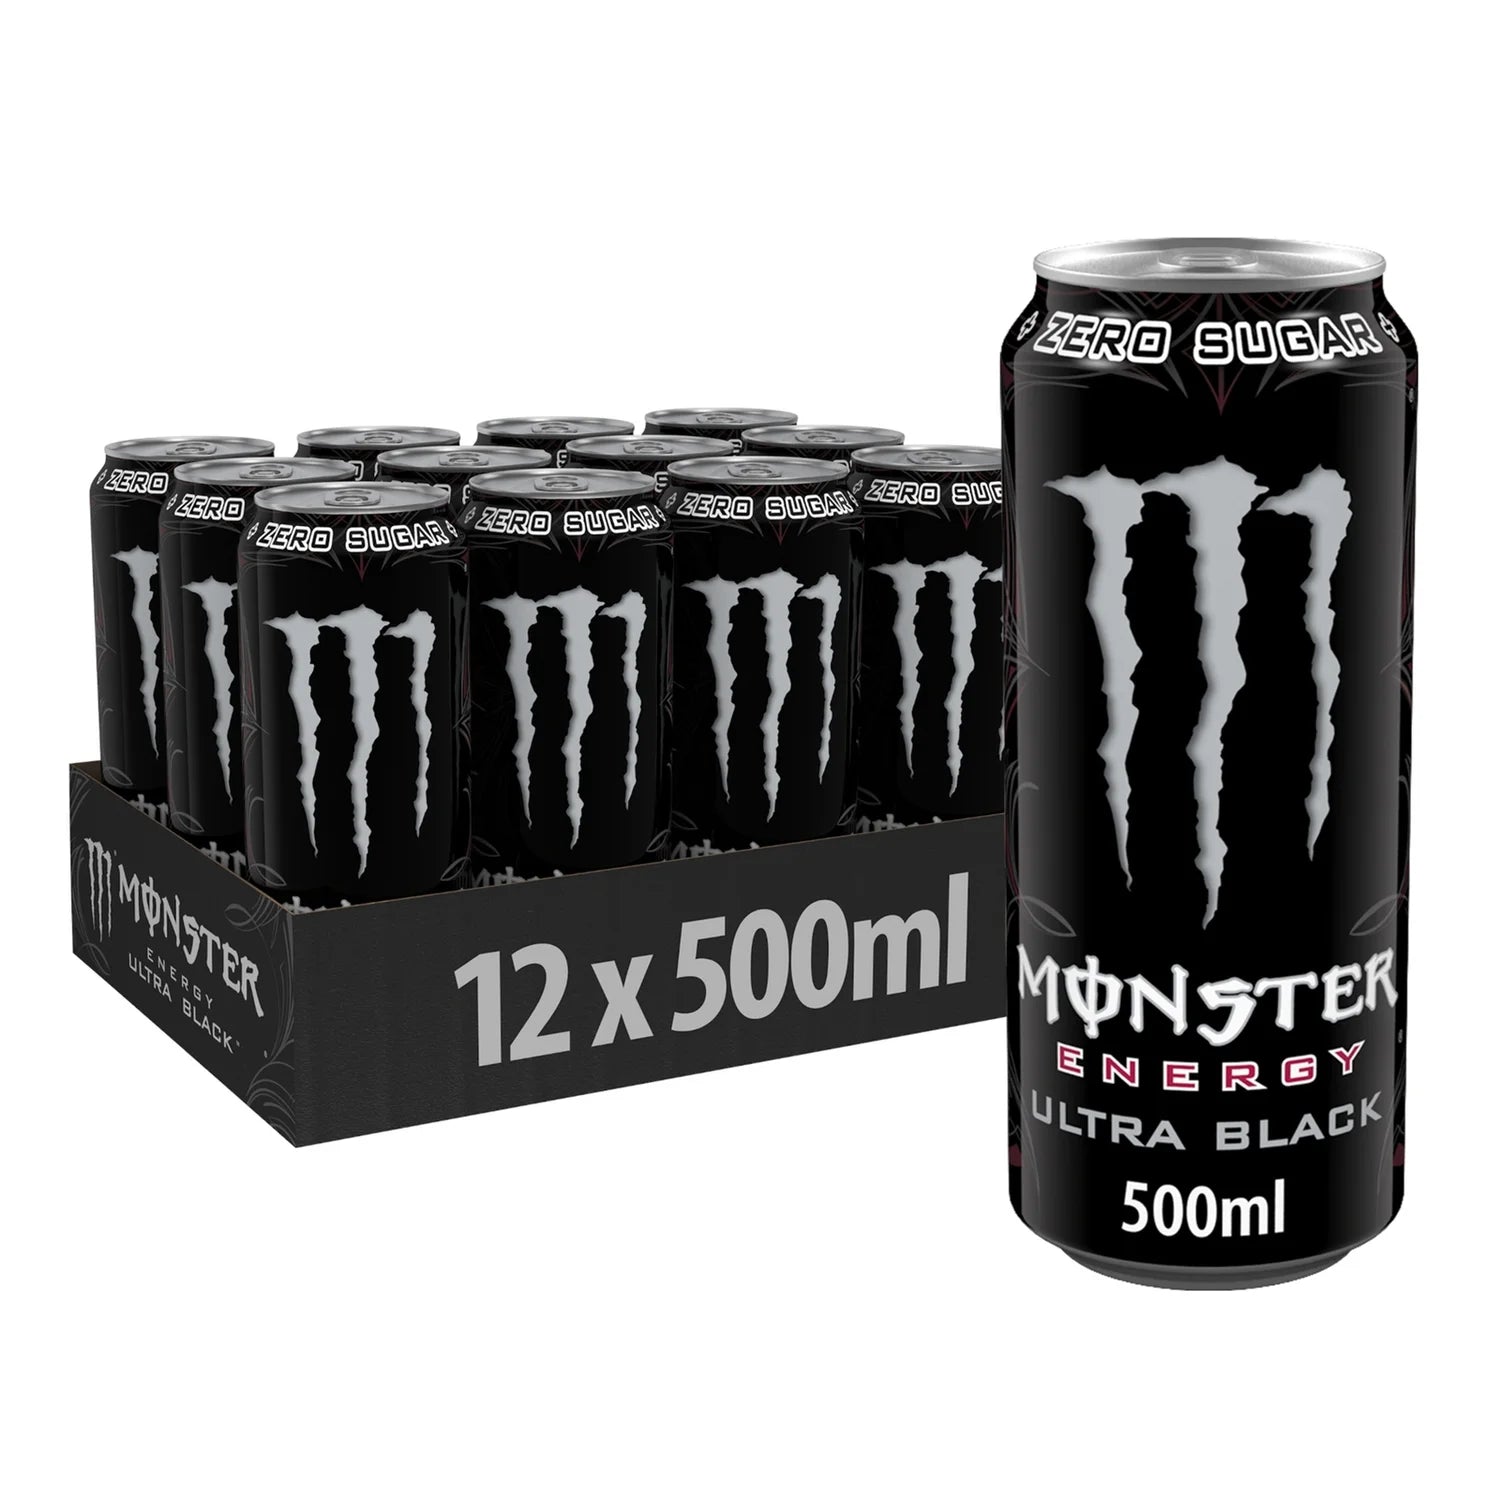 Monster Energy Drink Ultra Black - 500ml - Case of 12